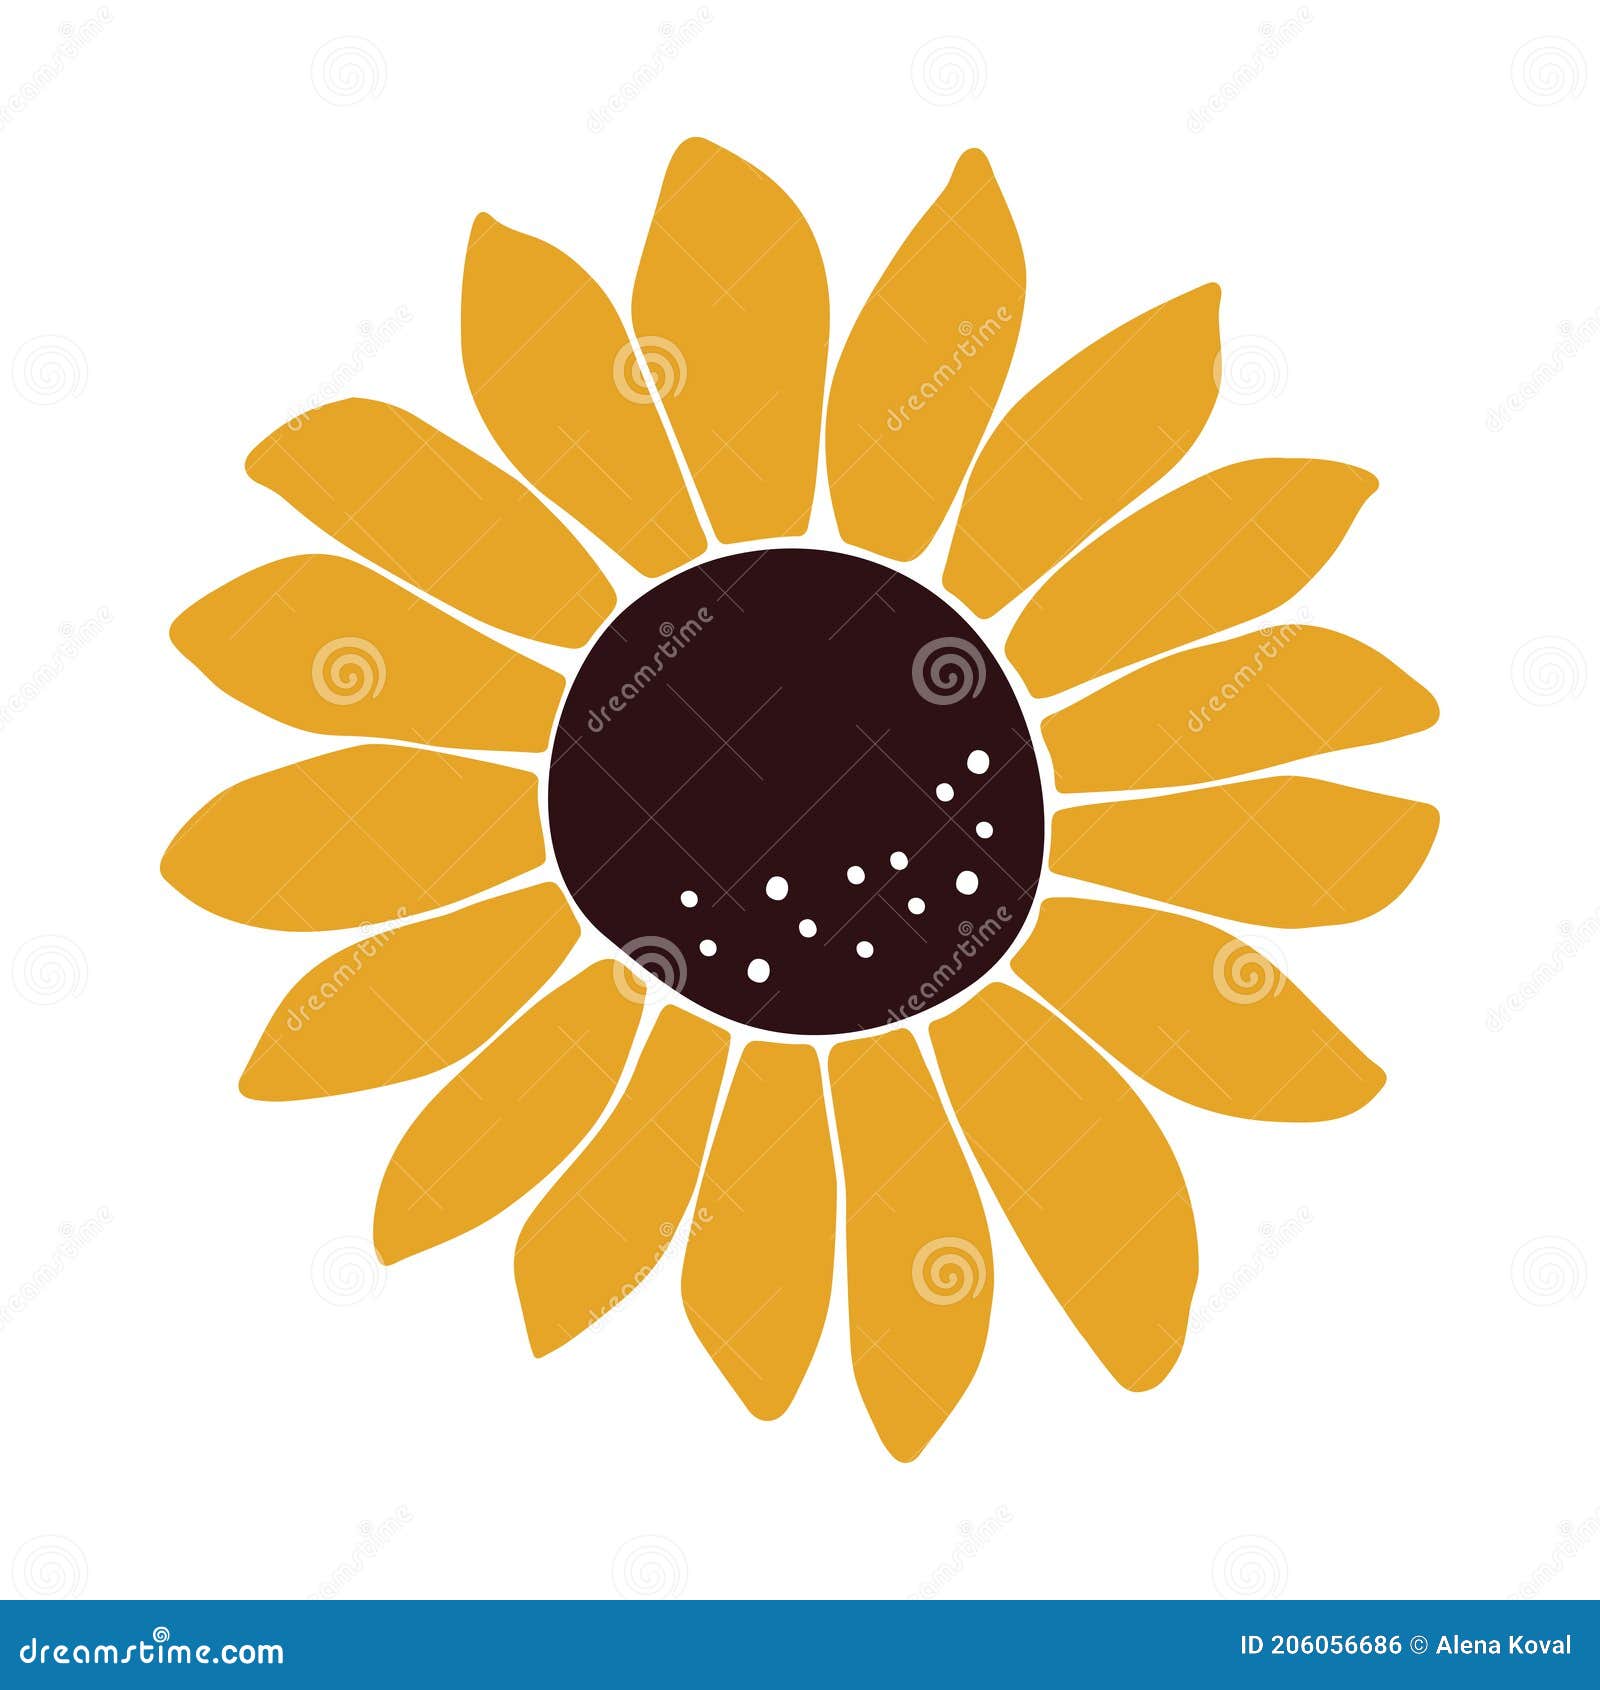 Vector Sunflower Illustration Summer Flower Clipart Stock Vector Illustration Of Farm Clipart 206056686